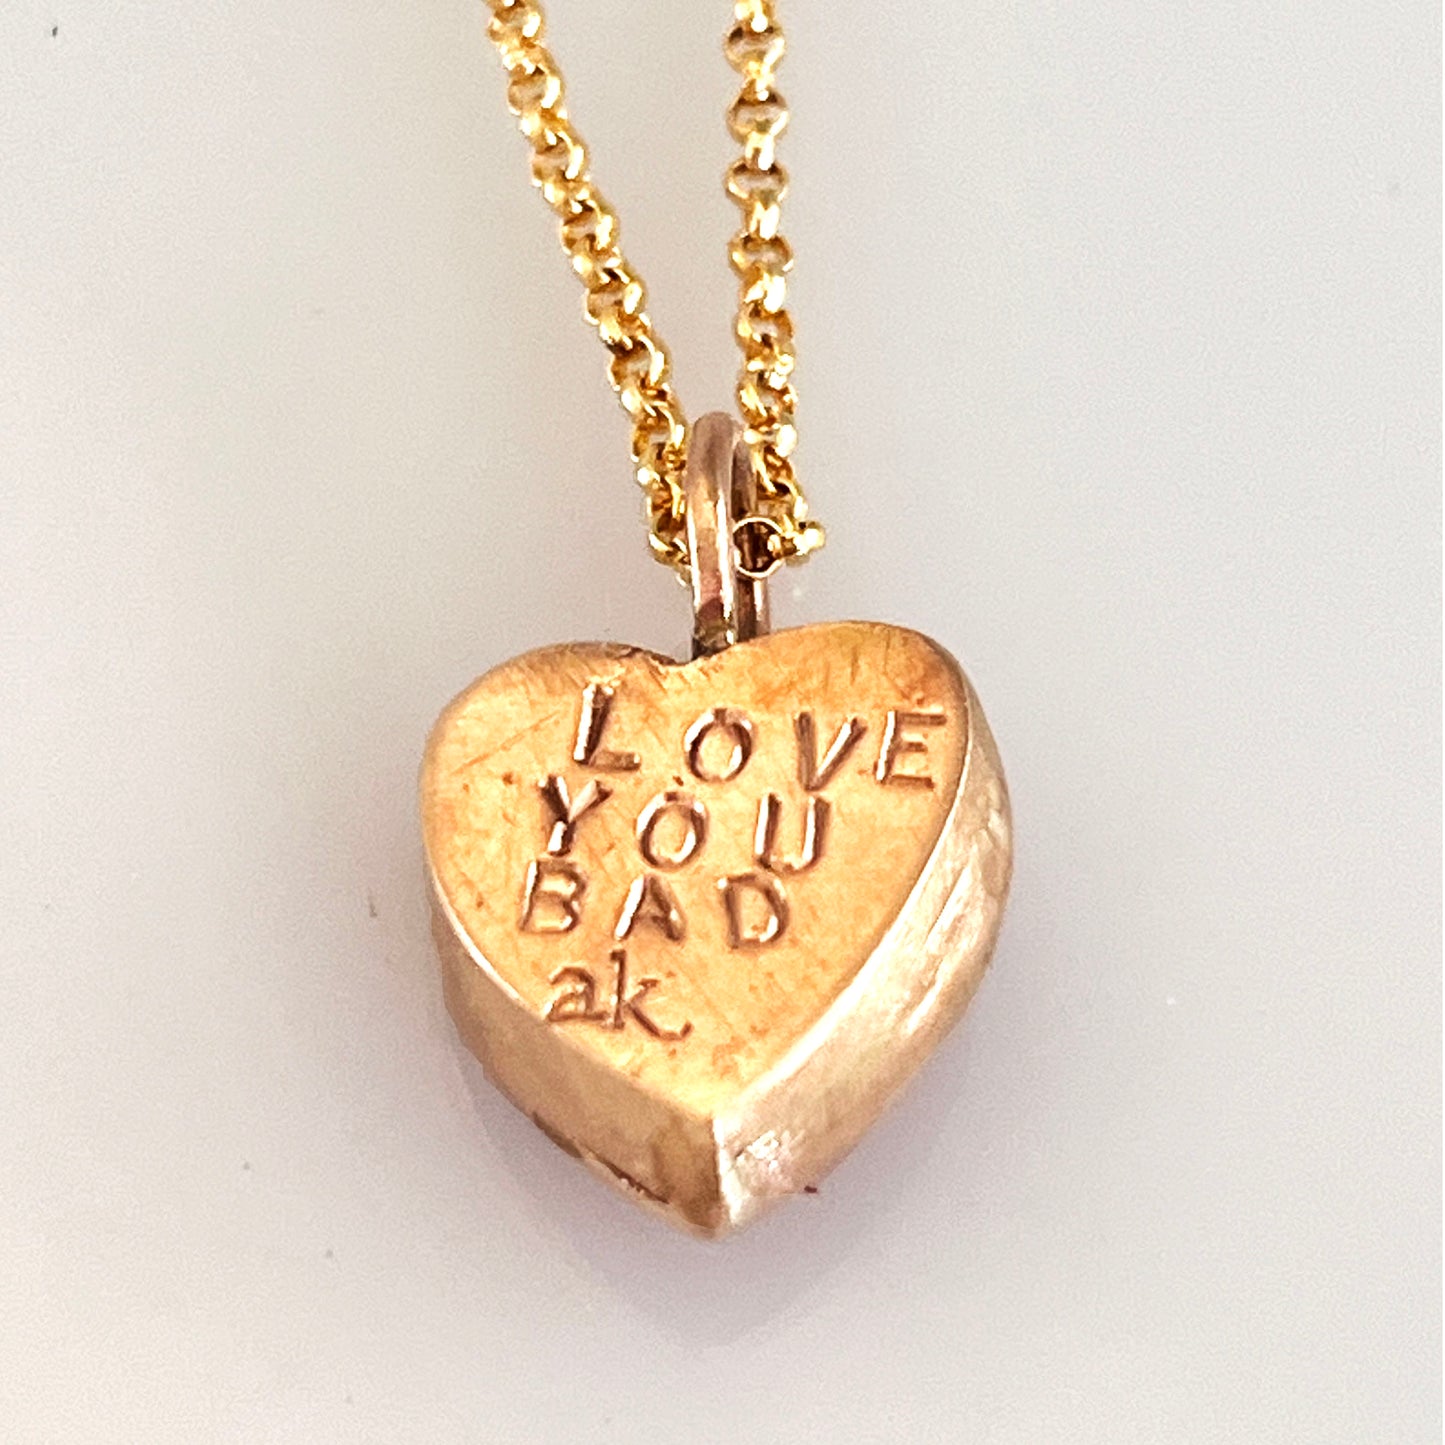 I Love you Bad 14k gold filled vintage button heart necklace